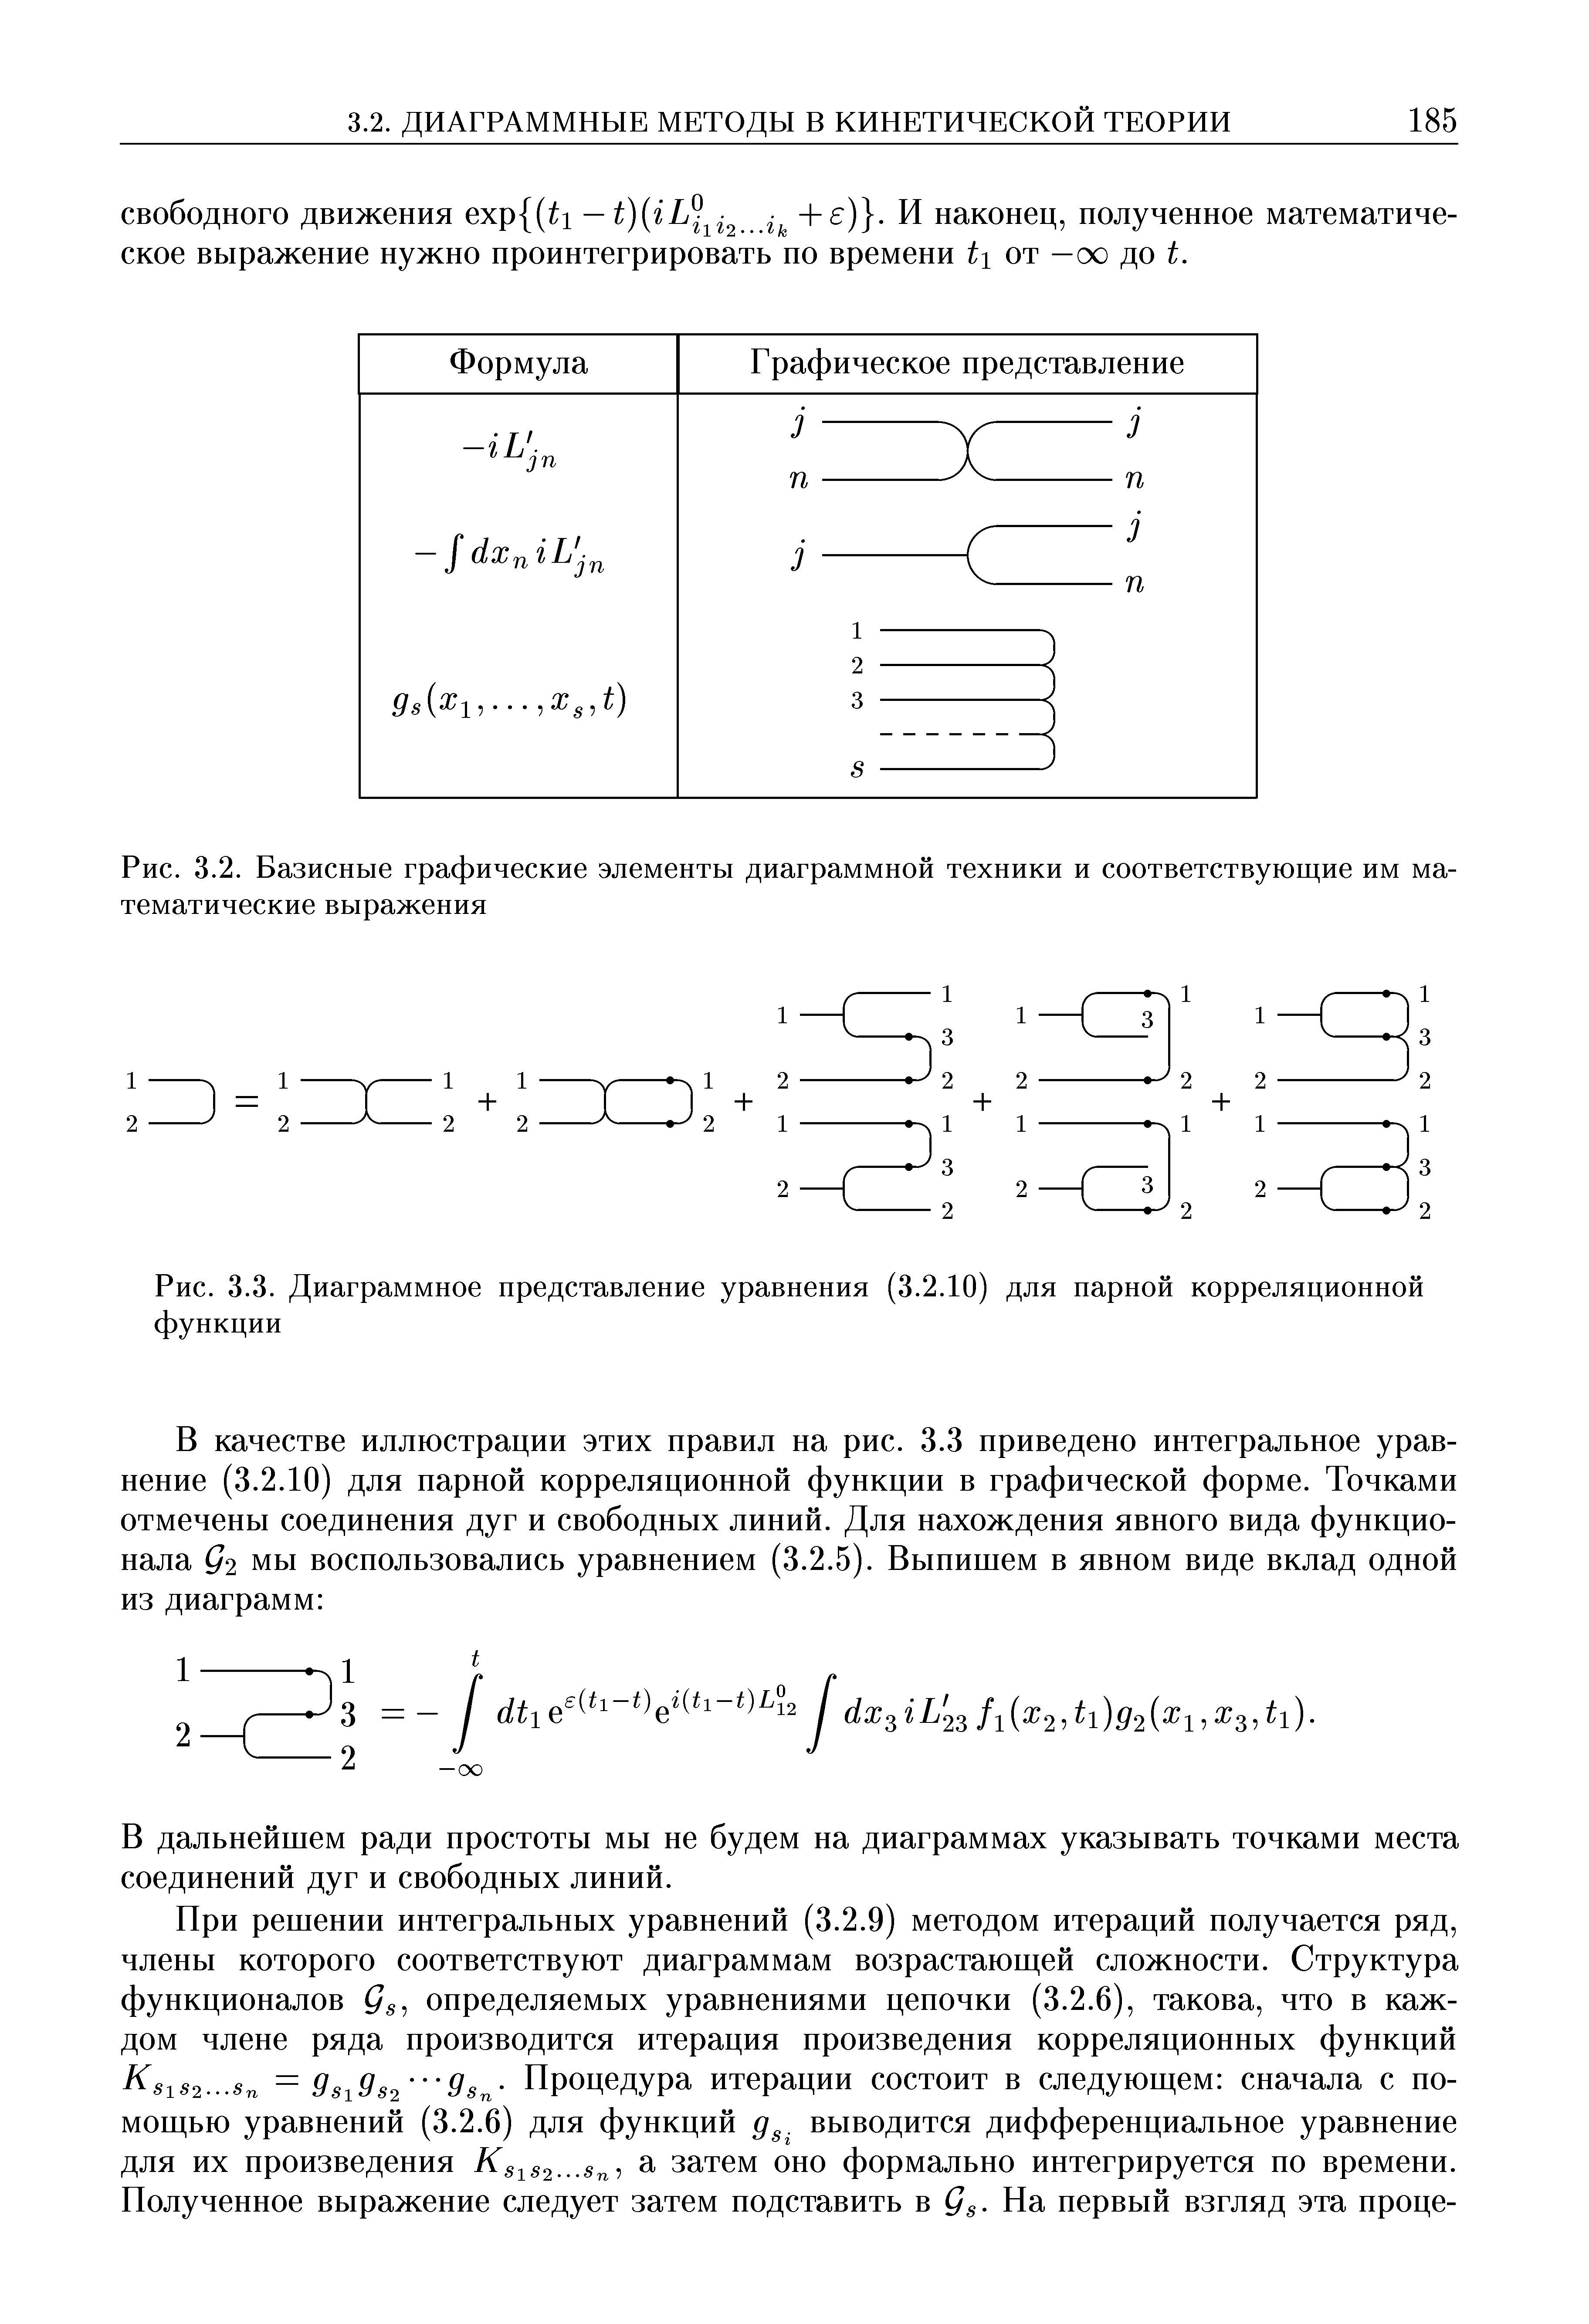 Рис. 3.3. Диаграммное представление уравнения (3.2.10) для парной корреляционной функции
